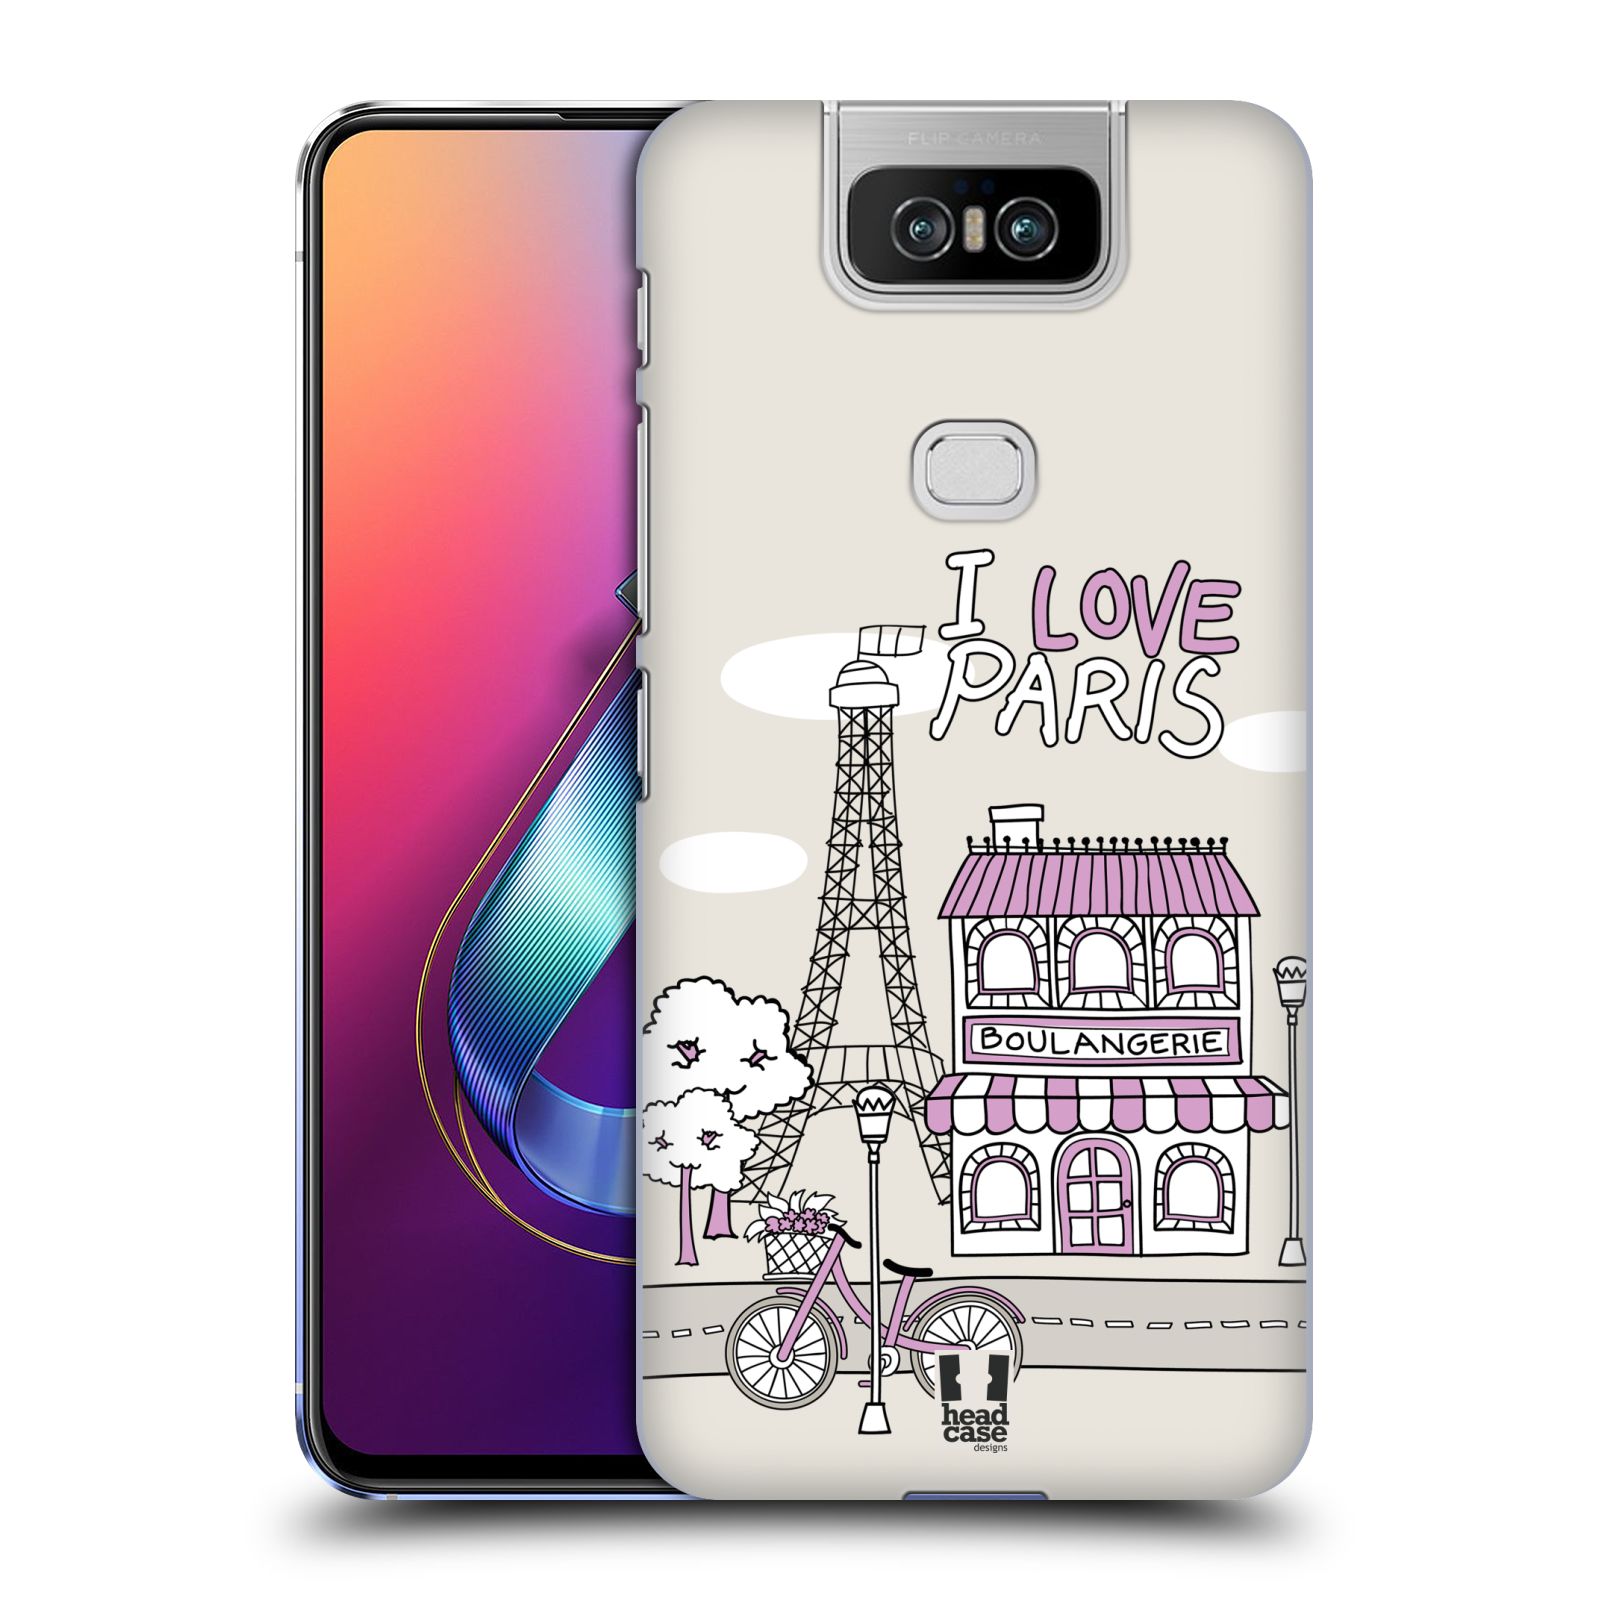 Pouzdro na mobil Asus Zenfone 6 ZS630KL - HEAD CASE - vzor Kreslená městečka FIALOVÁ, Paříž, Francie, I LOVE PARIS